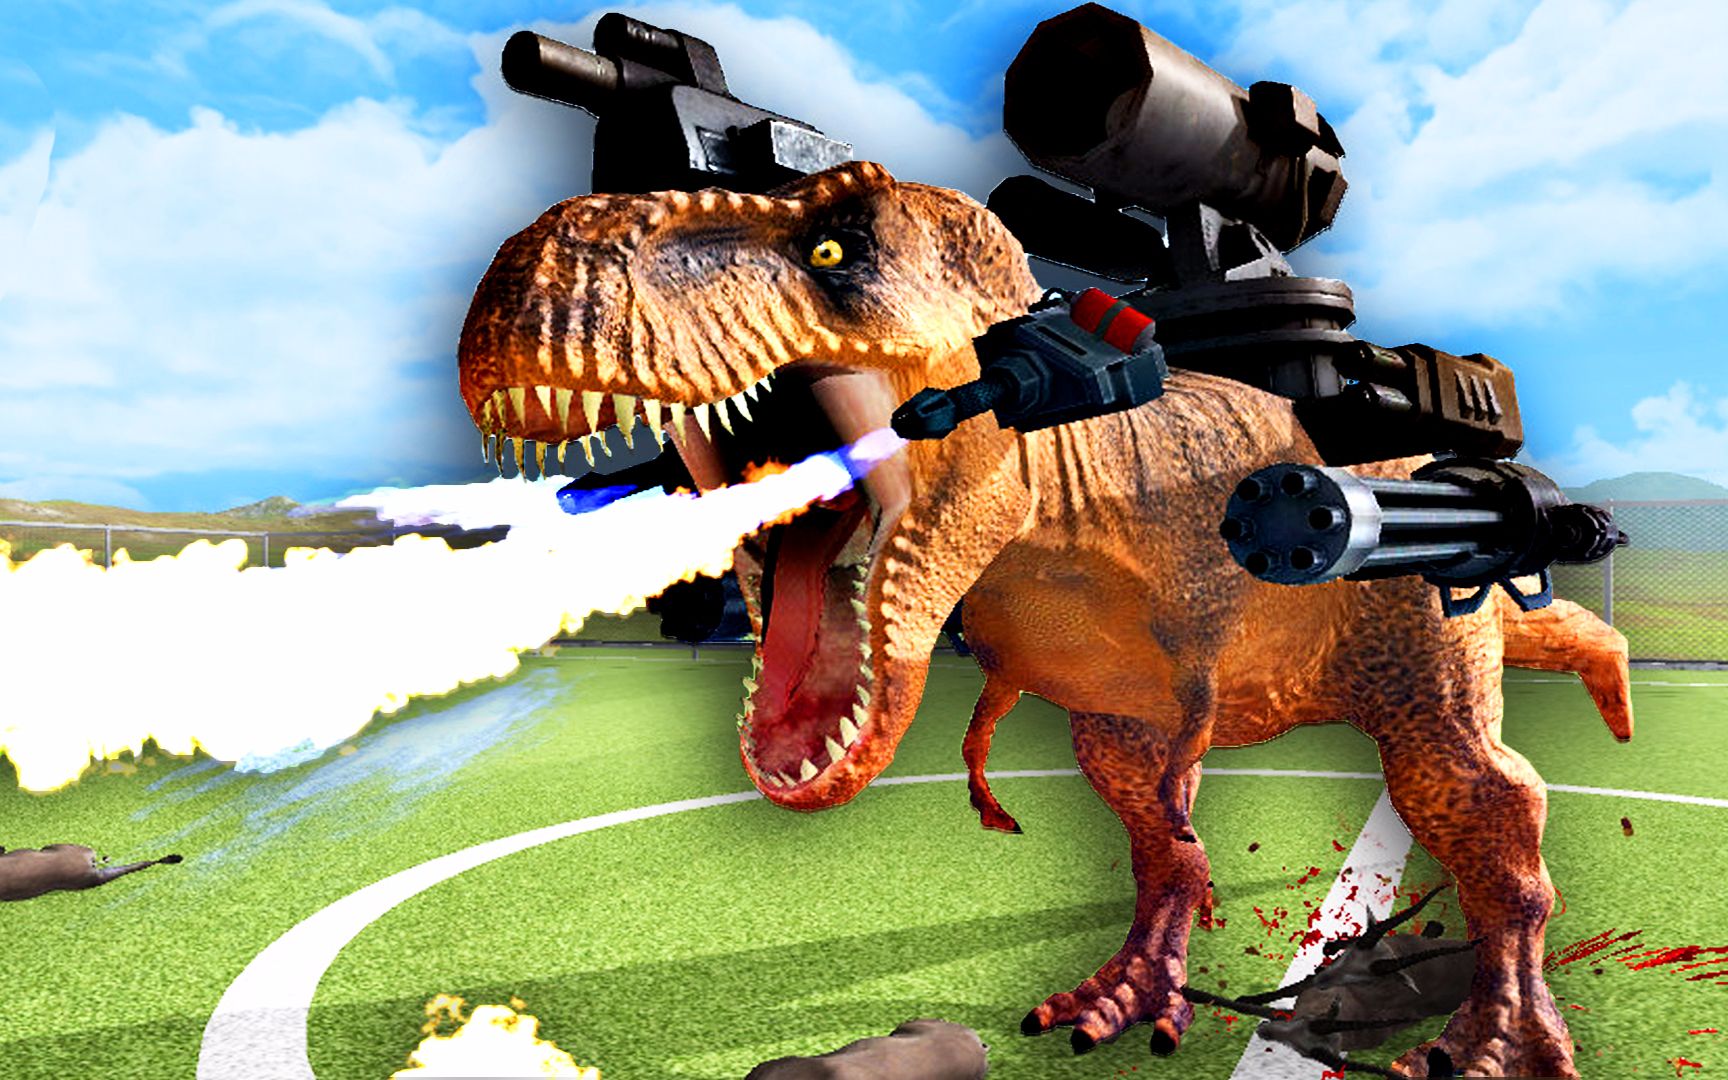 【屌德斯解说】 动物进化战争模拟器 机械武装霸王龙不仅能开炮还能喷火，真超兽武装！